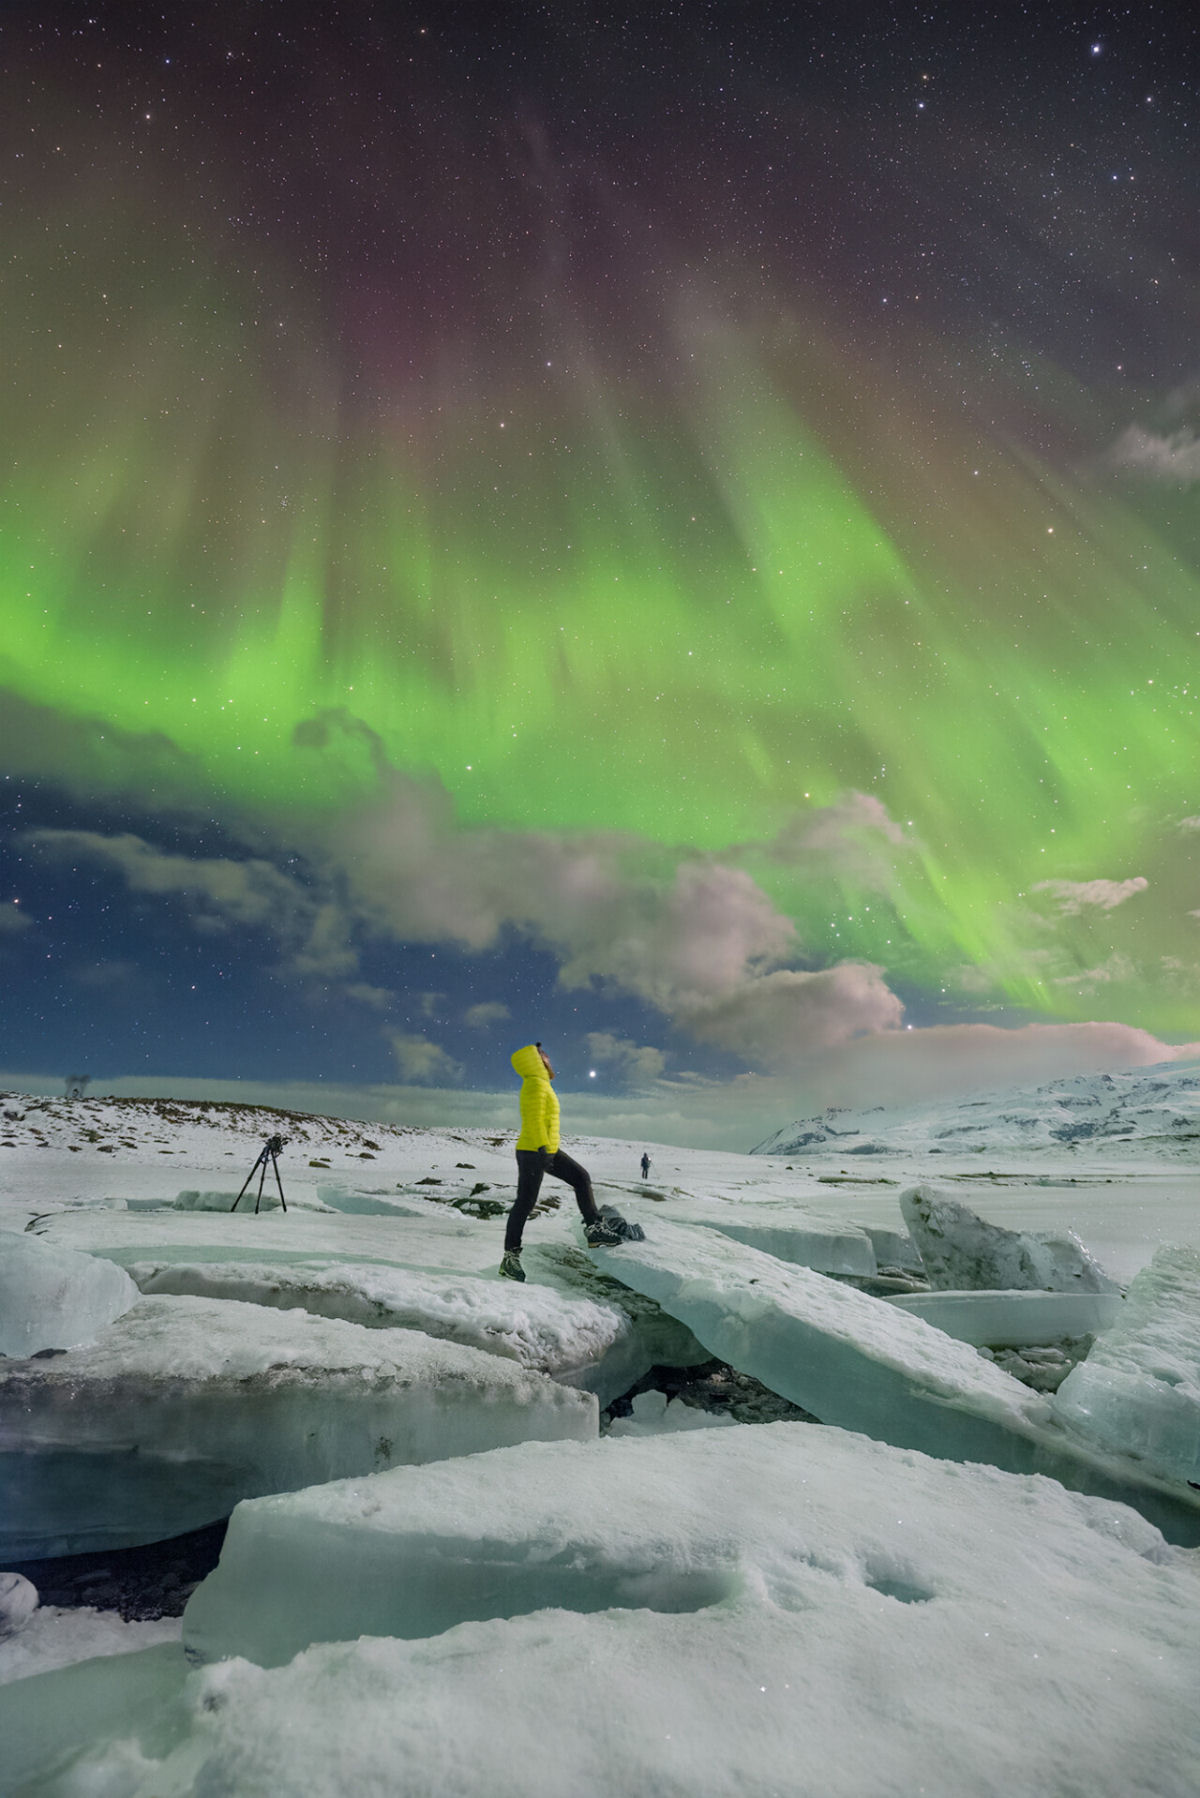 Fotos vívidas seguem a Aurora Boreal no céu noturno da Islândia 04